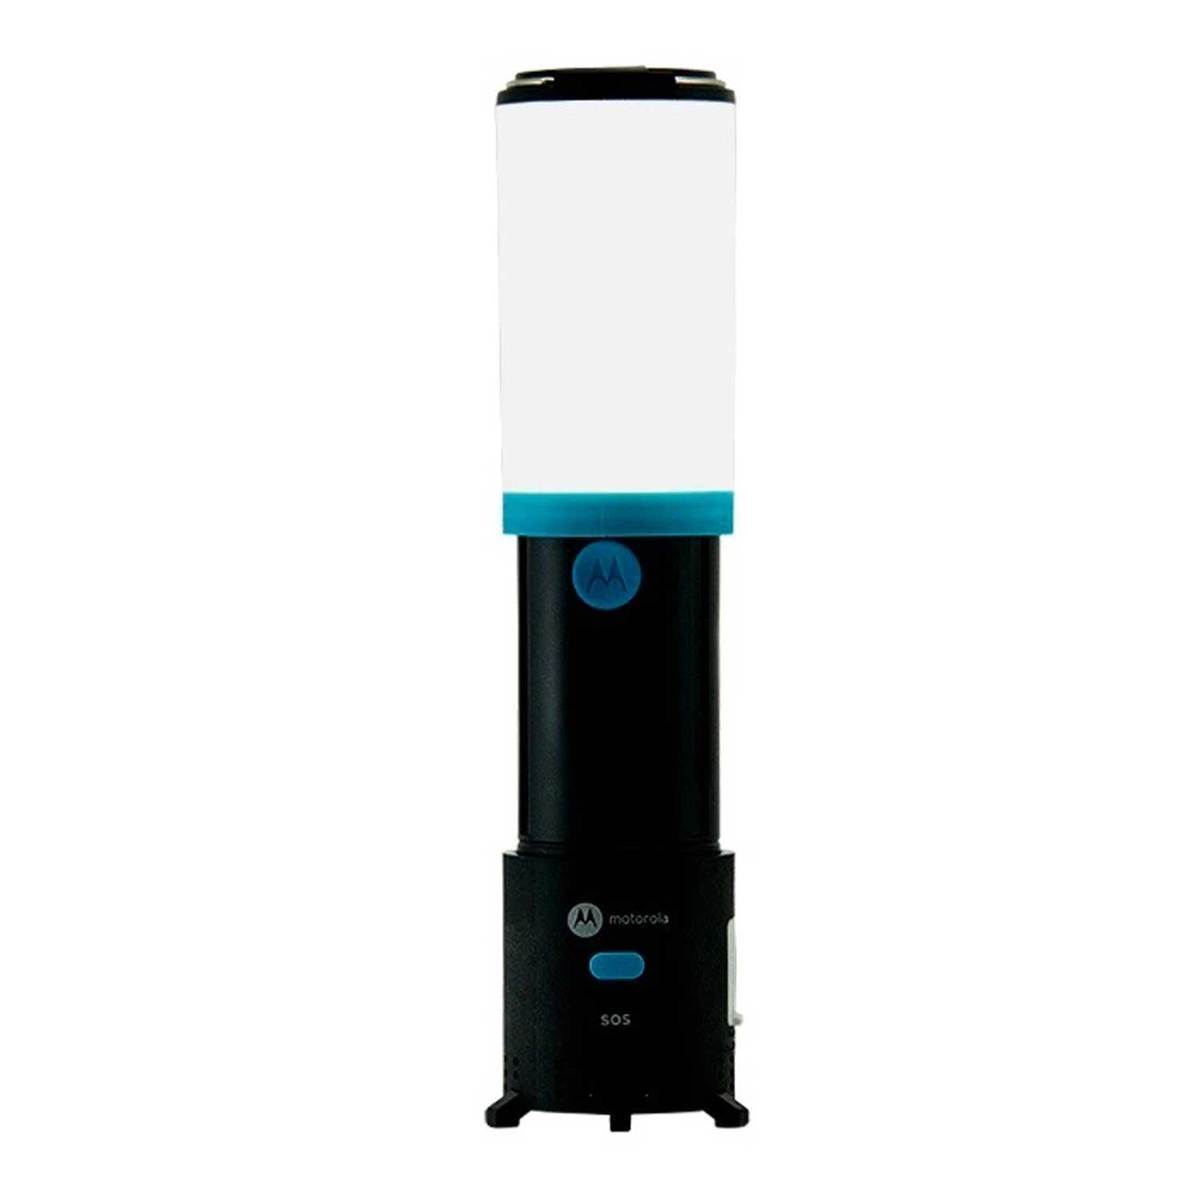 https://www.sportsmans.com/medias/motorola-water-resistant-outdoor-180-lumen-rechargeable-led-flashlight-lumo-lantern-combo-with-bluetooth-speaker-1627072-1.jpg?context=bWFzdGVyfGltYWdlc3wyMjM4OHxpbWFnZS9qcGVnfGltYWdlcy9oY2YvaDUxLzk2NDAzNjU0NTc0MzguanBnfGQyNjdlMWJhOTc5MzYxODFkMzlhMGZmNzc2MWU3NmRjOGExYWQ3NmUzNzJhYzU1NTk4YjZjYjljNzI4OTQ0M2U